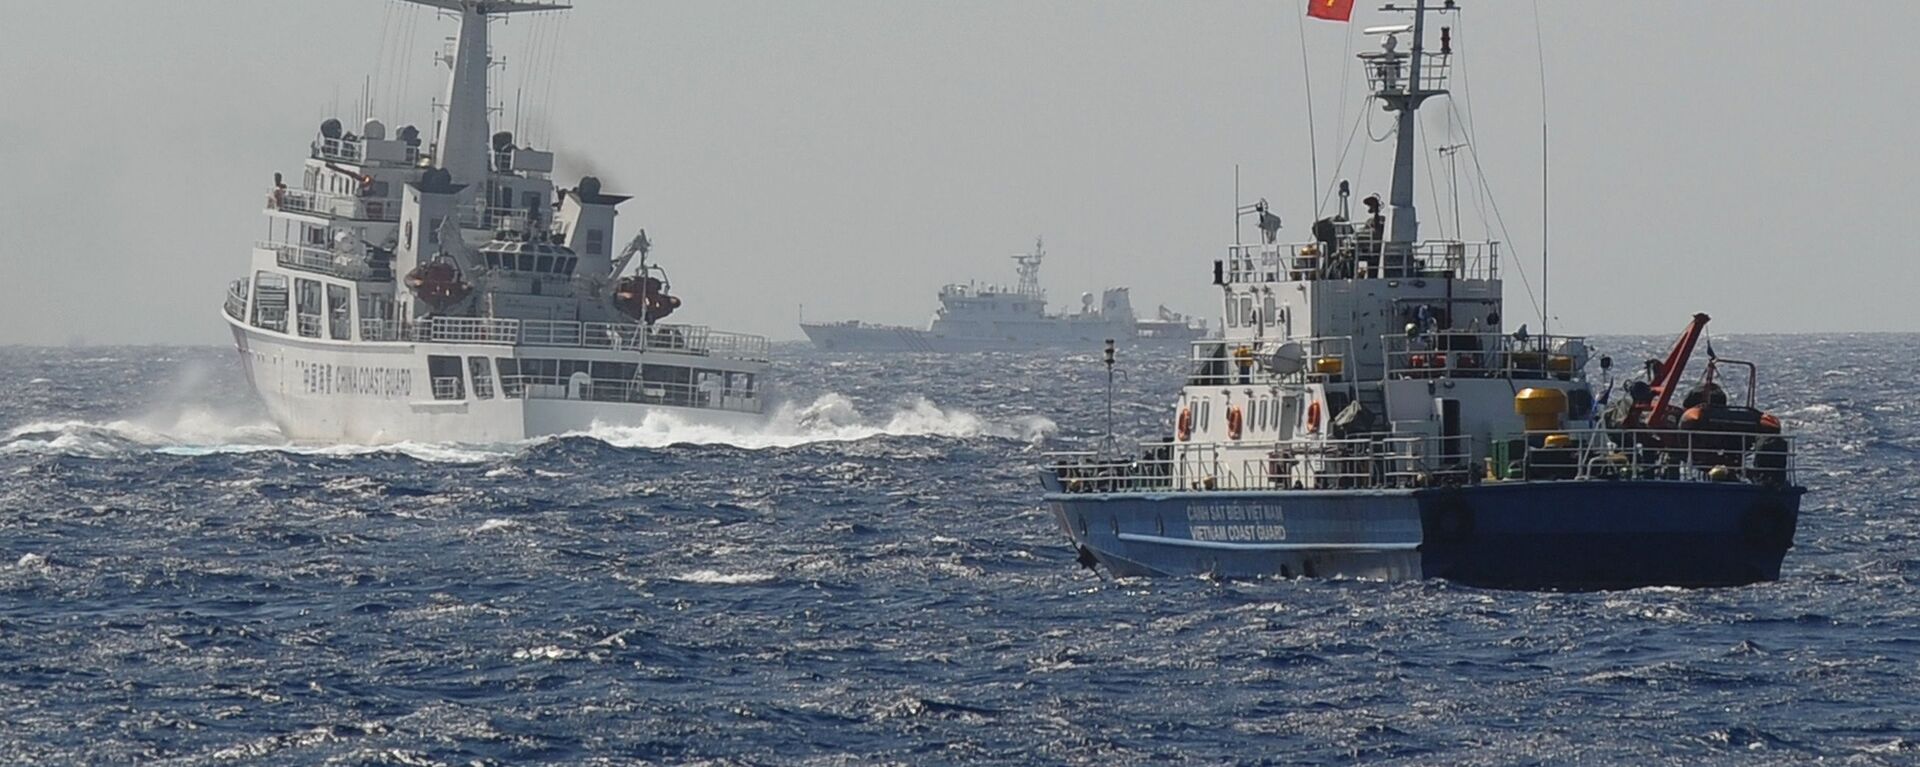 Tàu Cảnh sát biển Việt Nam và Trung Quốc gần vị trí đặt giàn khoan dầu của Trung Quốc trên Biển Đông - Sputnik Việt Nam, 1920, 08.07.2021